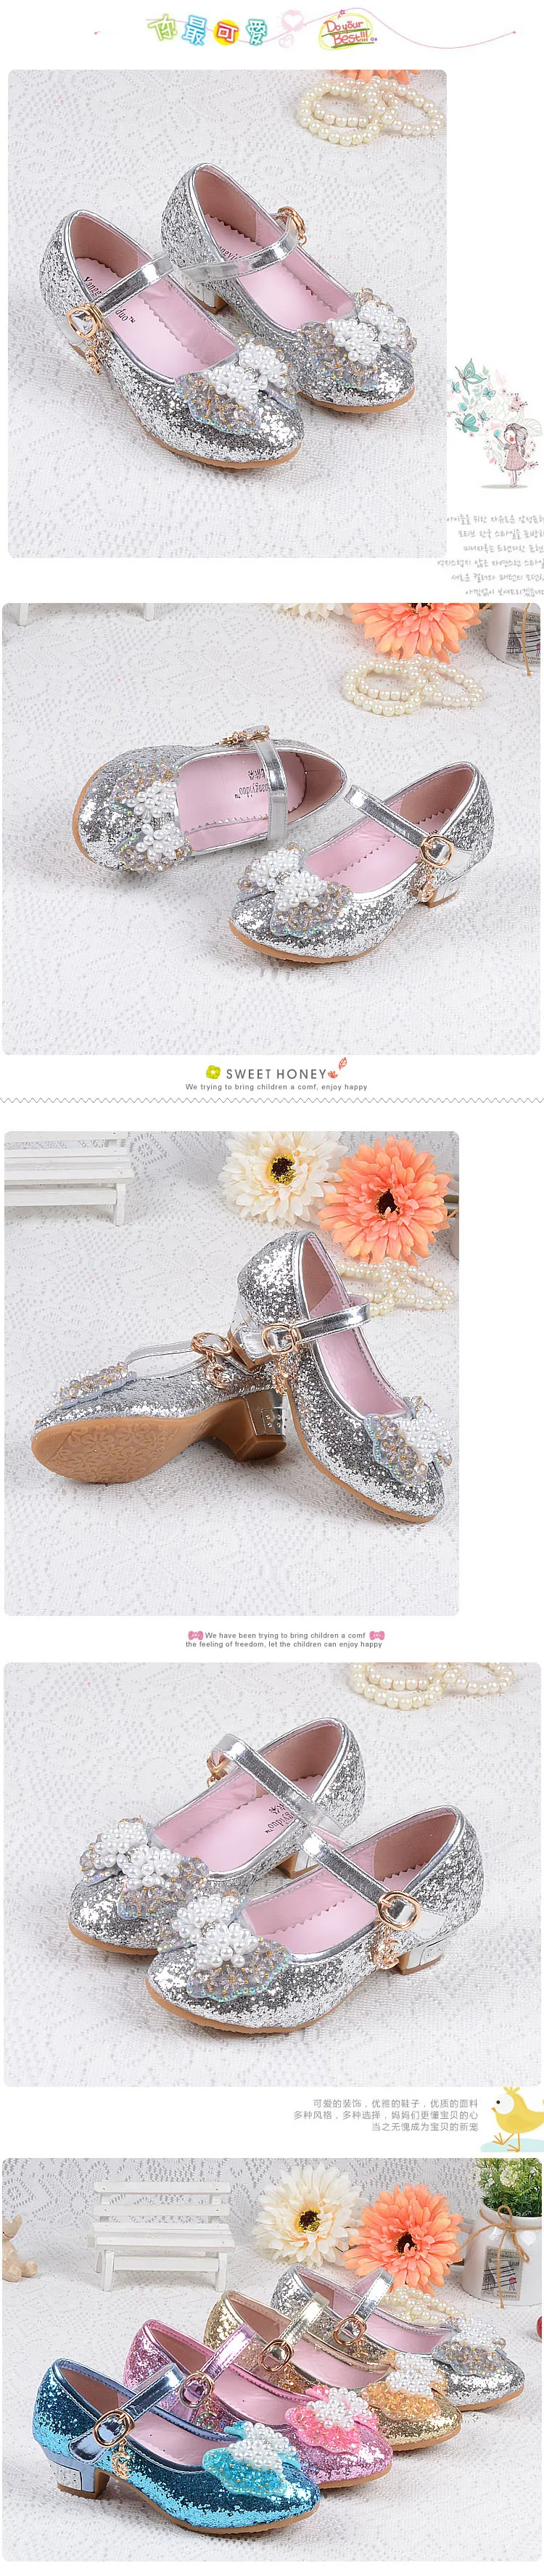 Дети Принцесса Блеск PU обувь танцевальная обувь для девочек на квадратном высоком каблуке обувь для вечеринок размер 26-37 4 цвета TX01